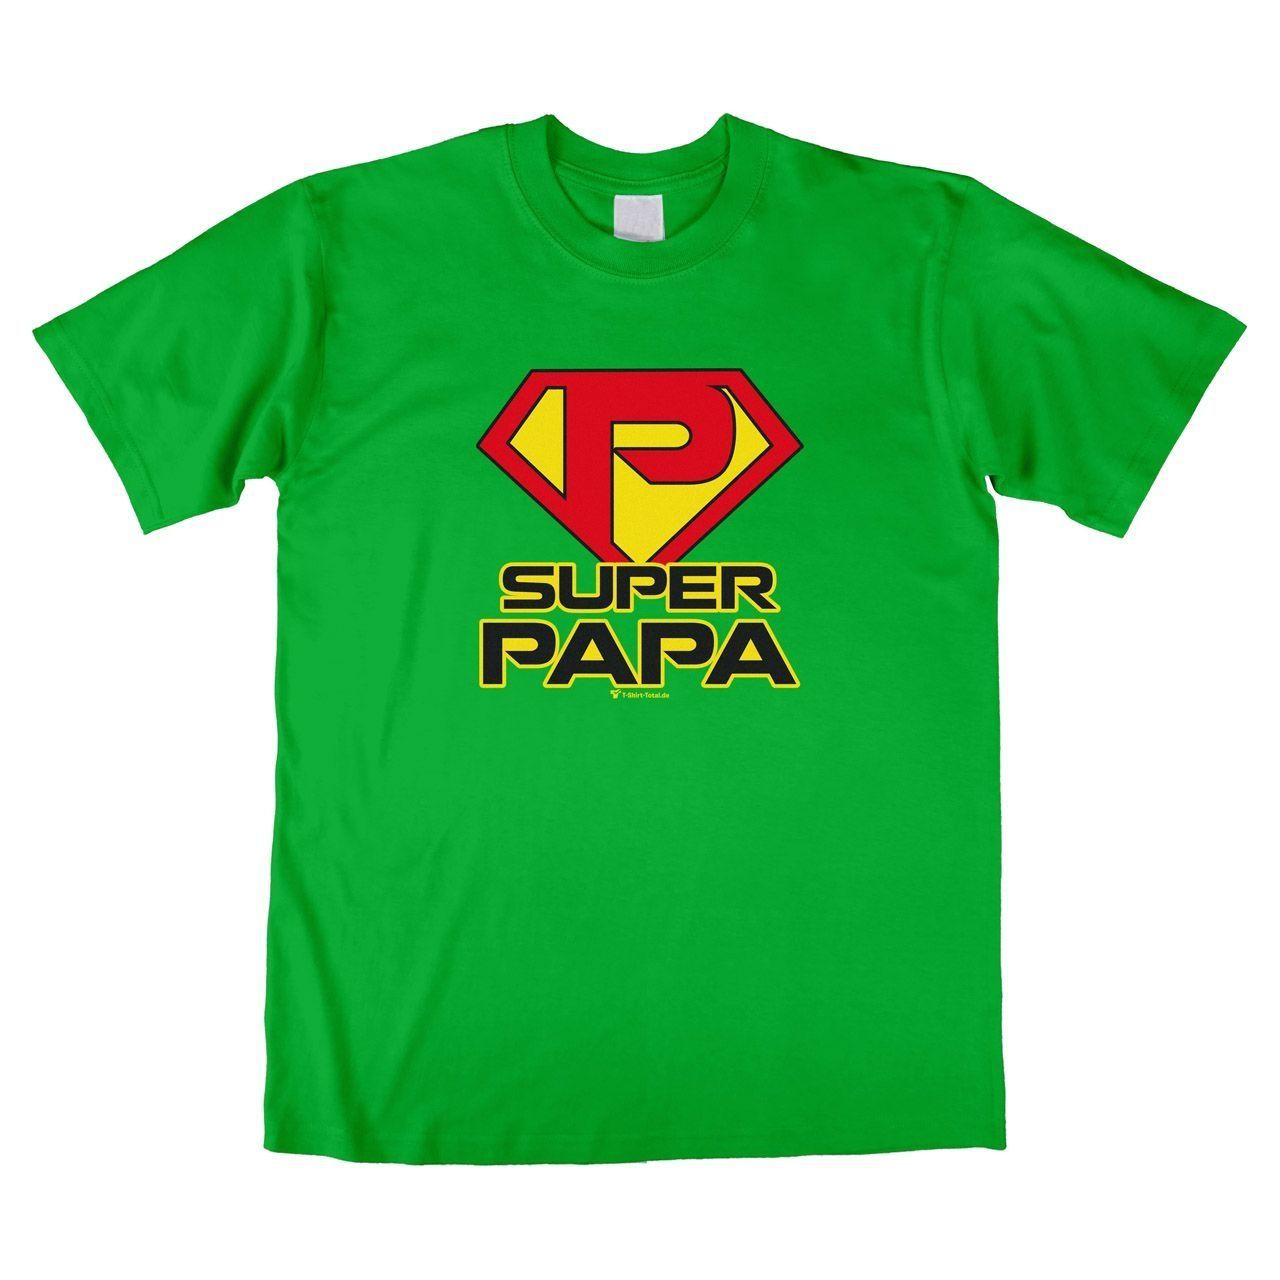 Super Papa Unisex T-Shirt grün Large